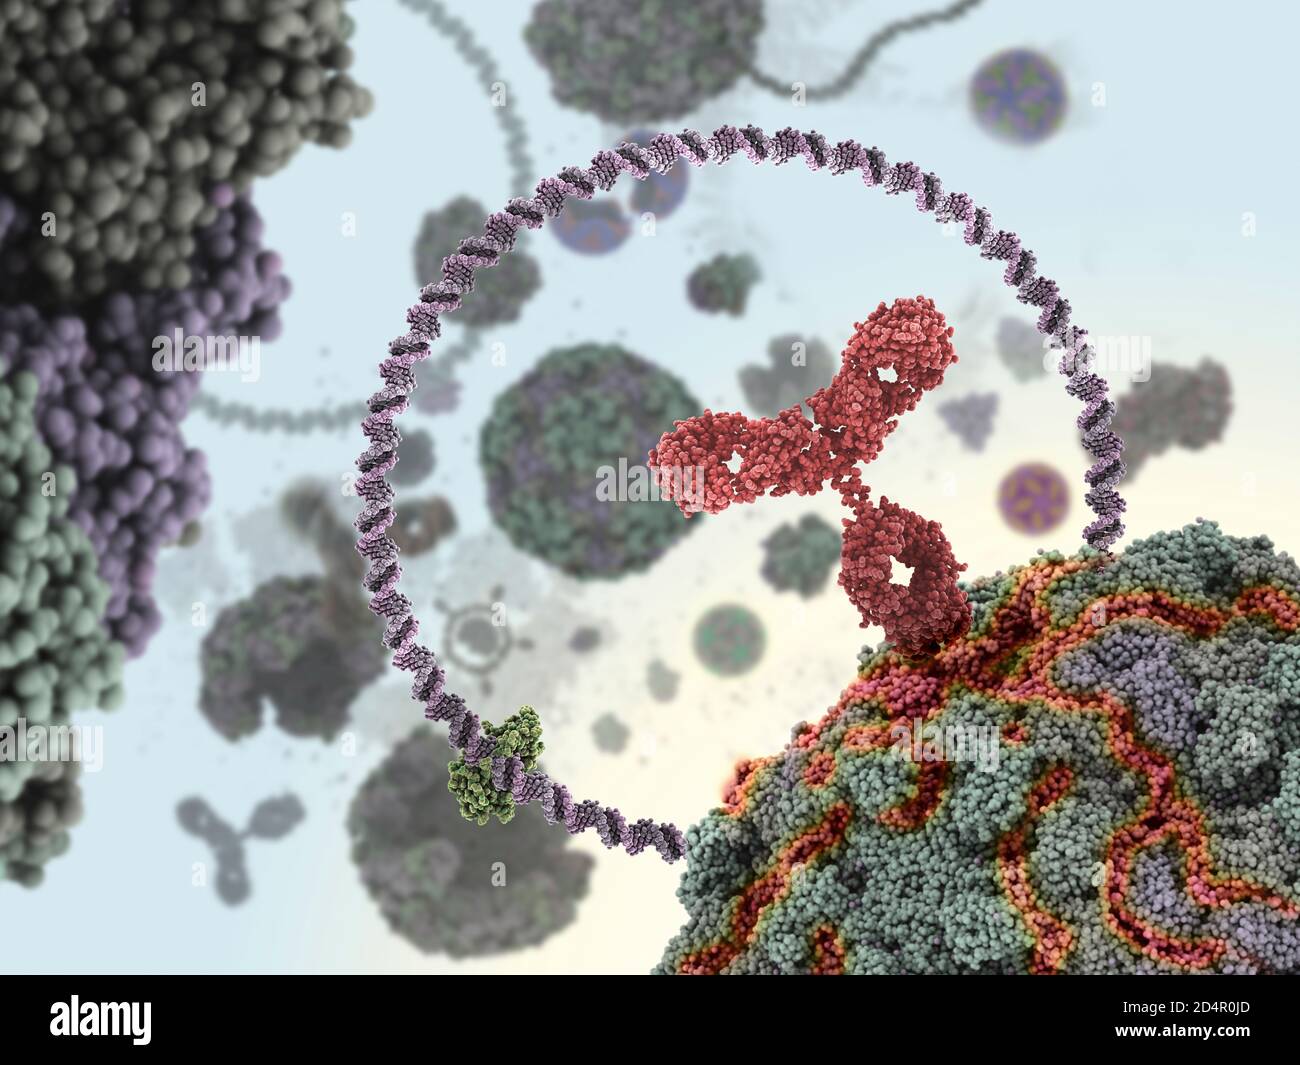 Humaner Antikörper (rot), der ein Virus angreift, indem er sich an eine bestimmte Stelle bindet und dann die Virusfunktion hemmt. Stockfoto